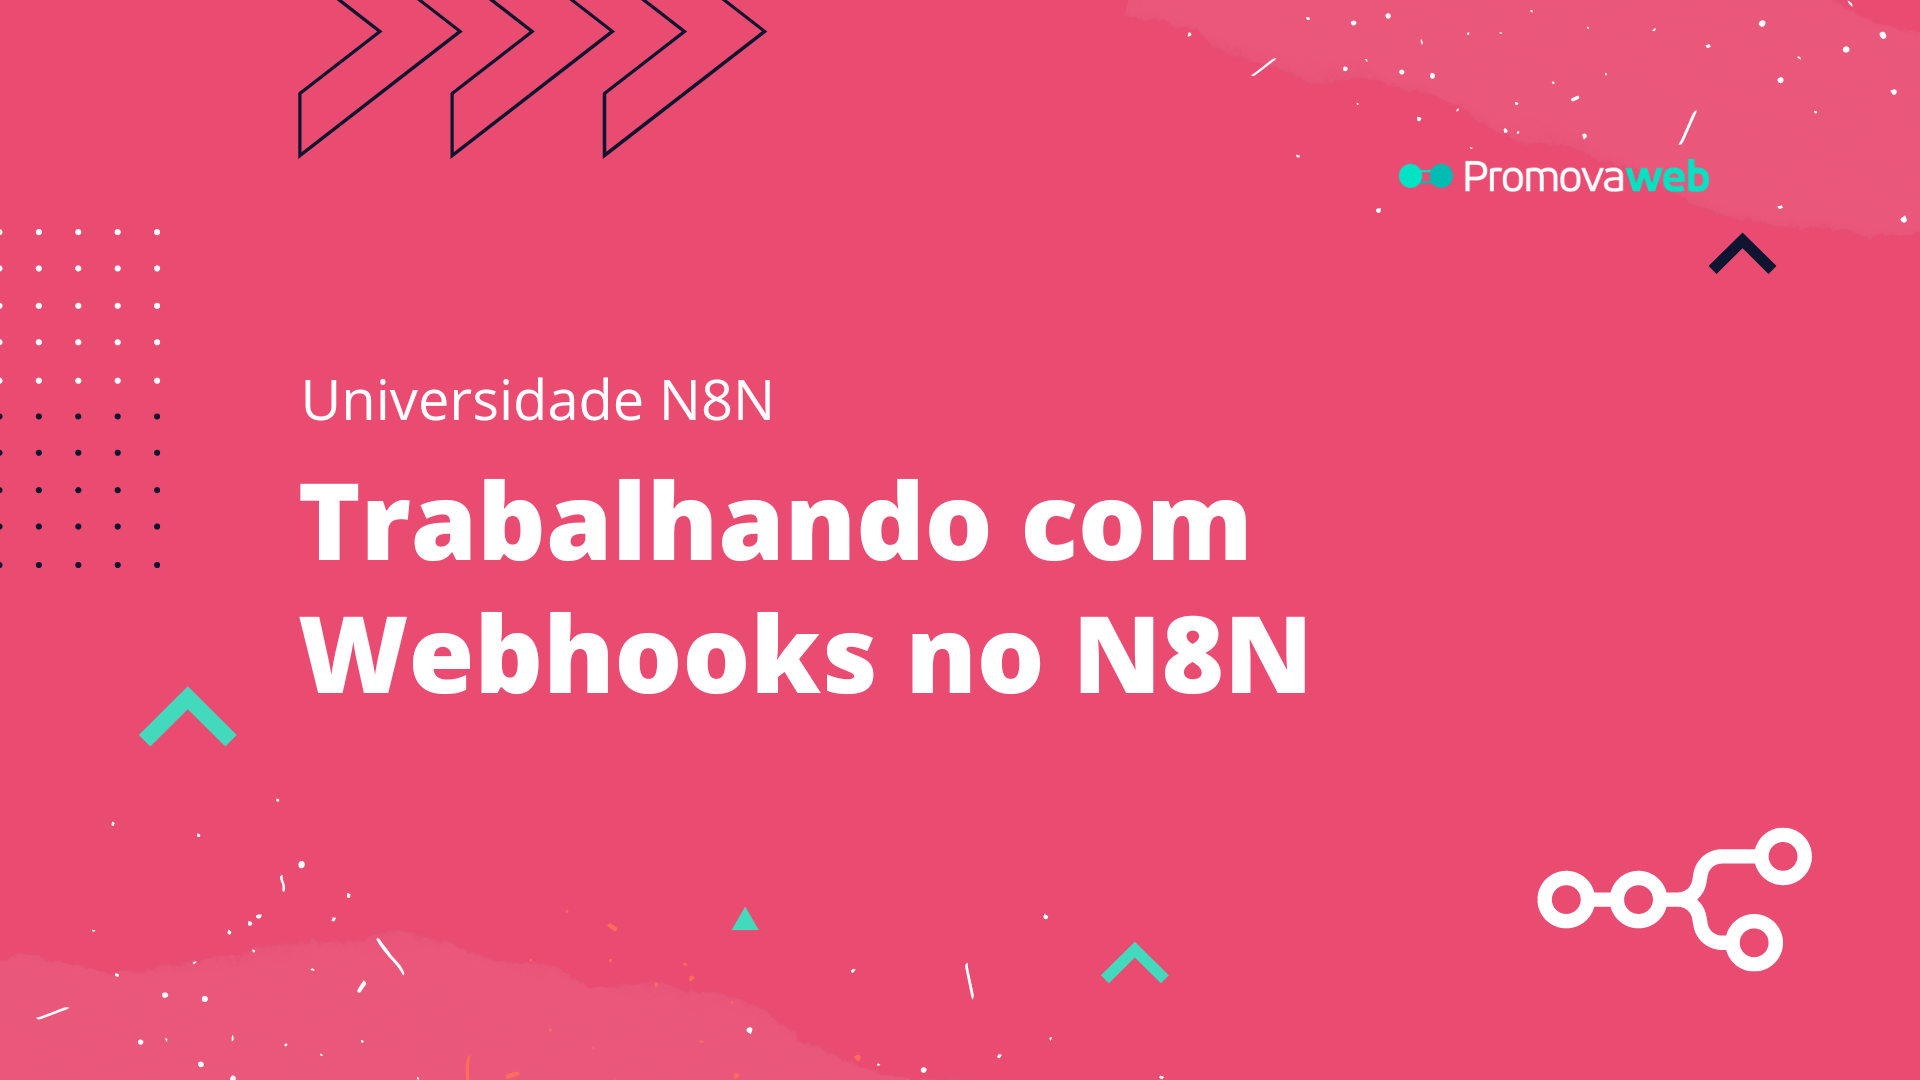 Trabalhando com Webhooks no N8N